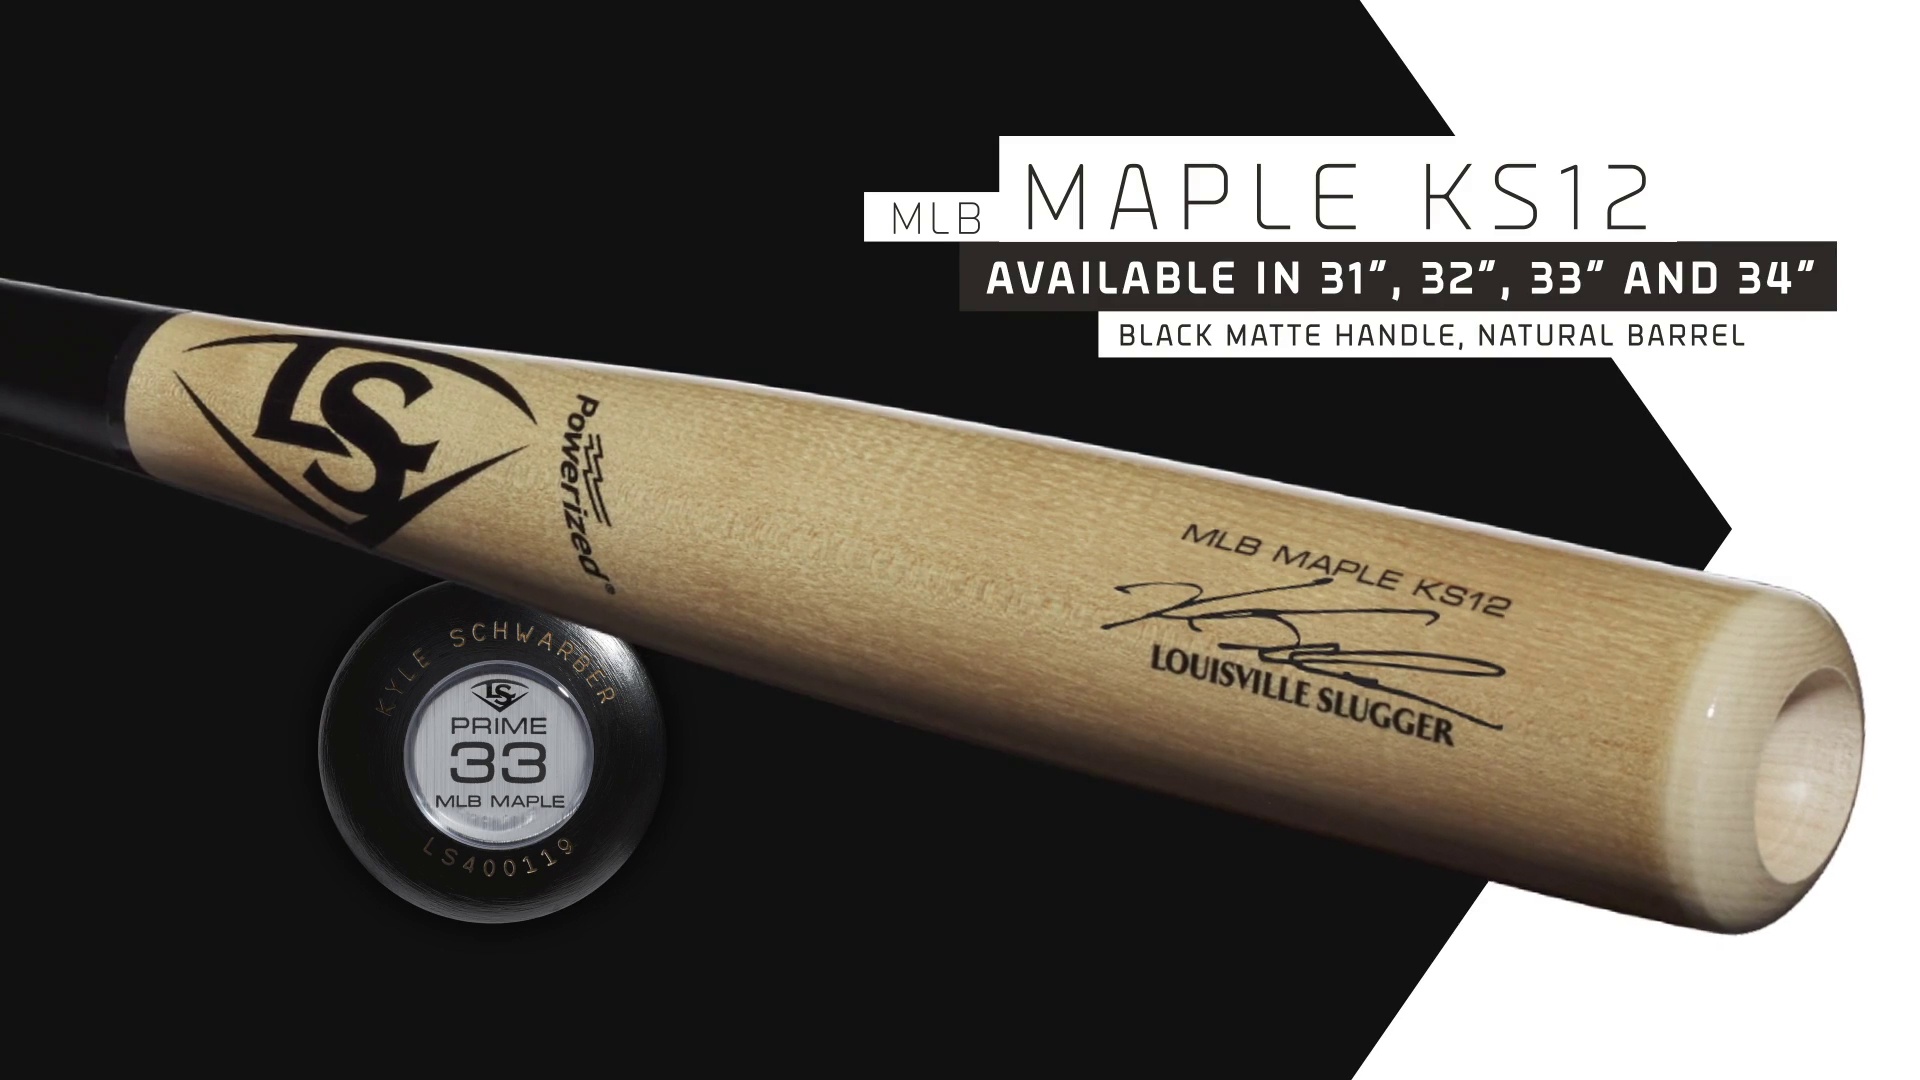 33" Details about   Louisville Slugger Prime Schwarber Maple Ks12 Wood Baseball Bat 